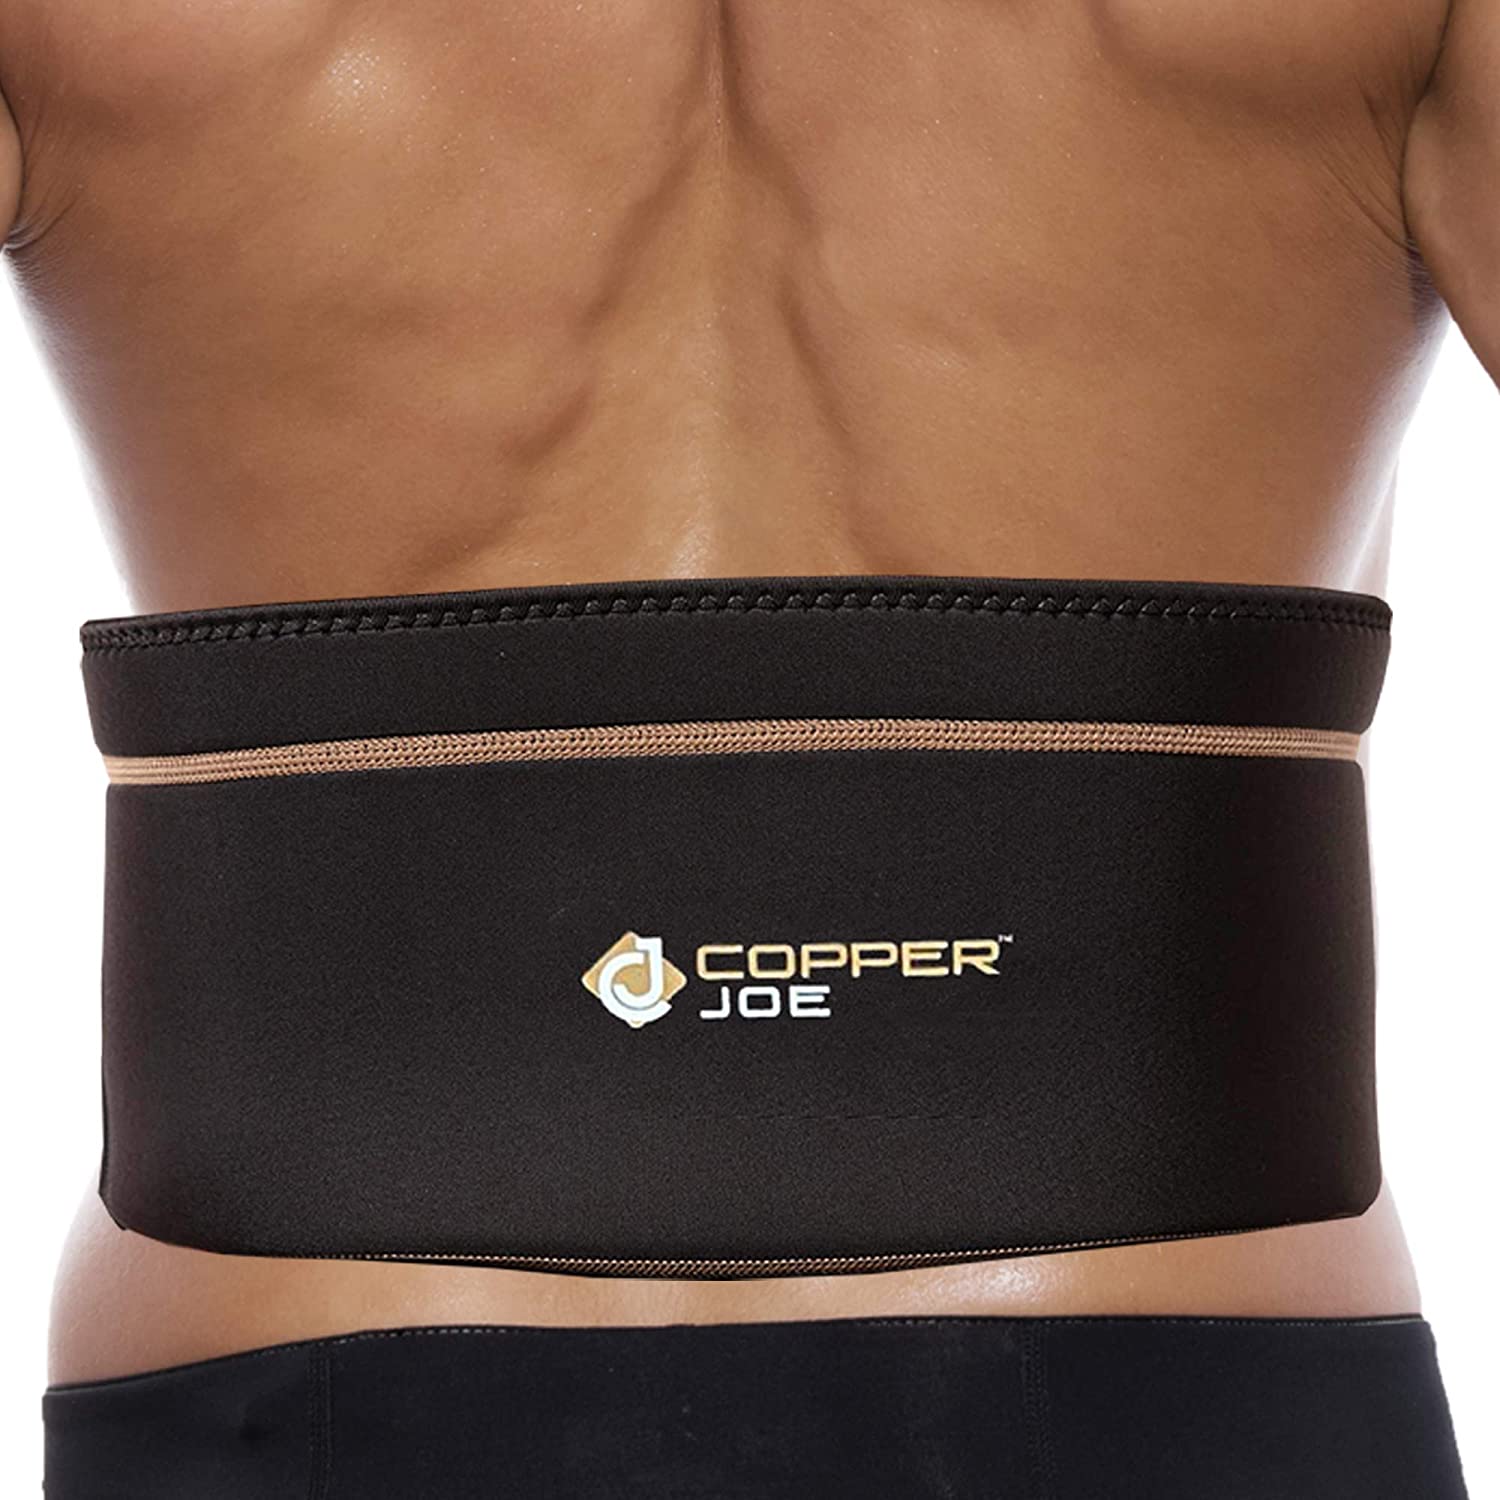 Buy Copper Joe- Compression Recovery Shoulder Brace , Shoulder